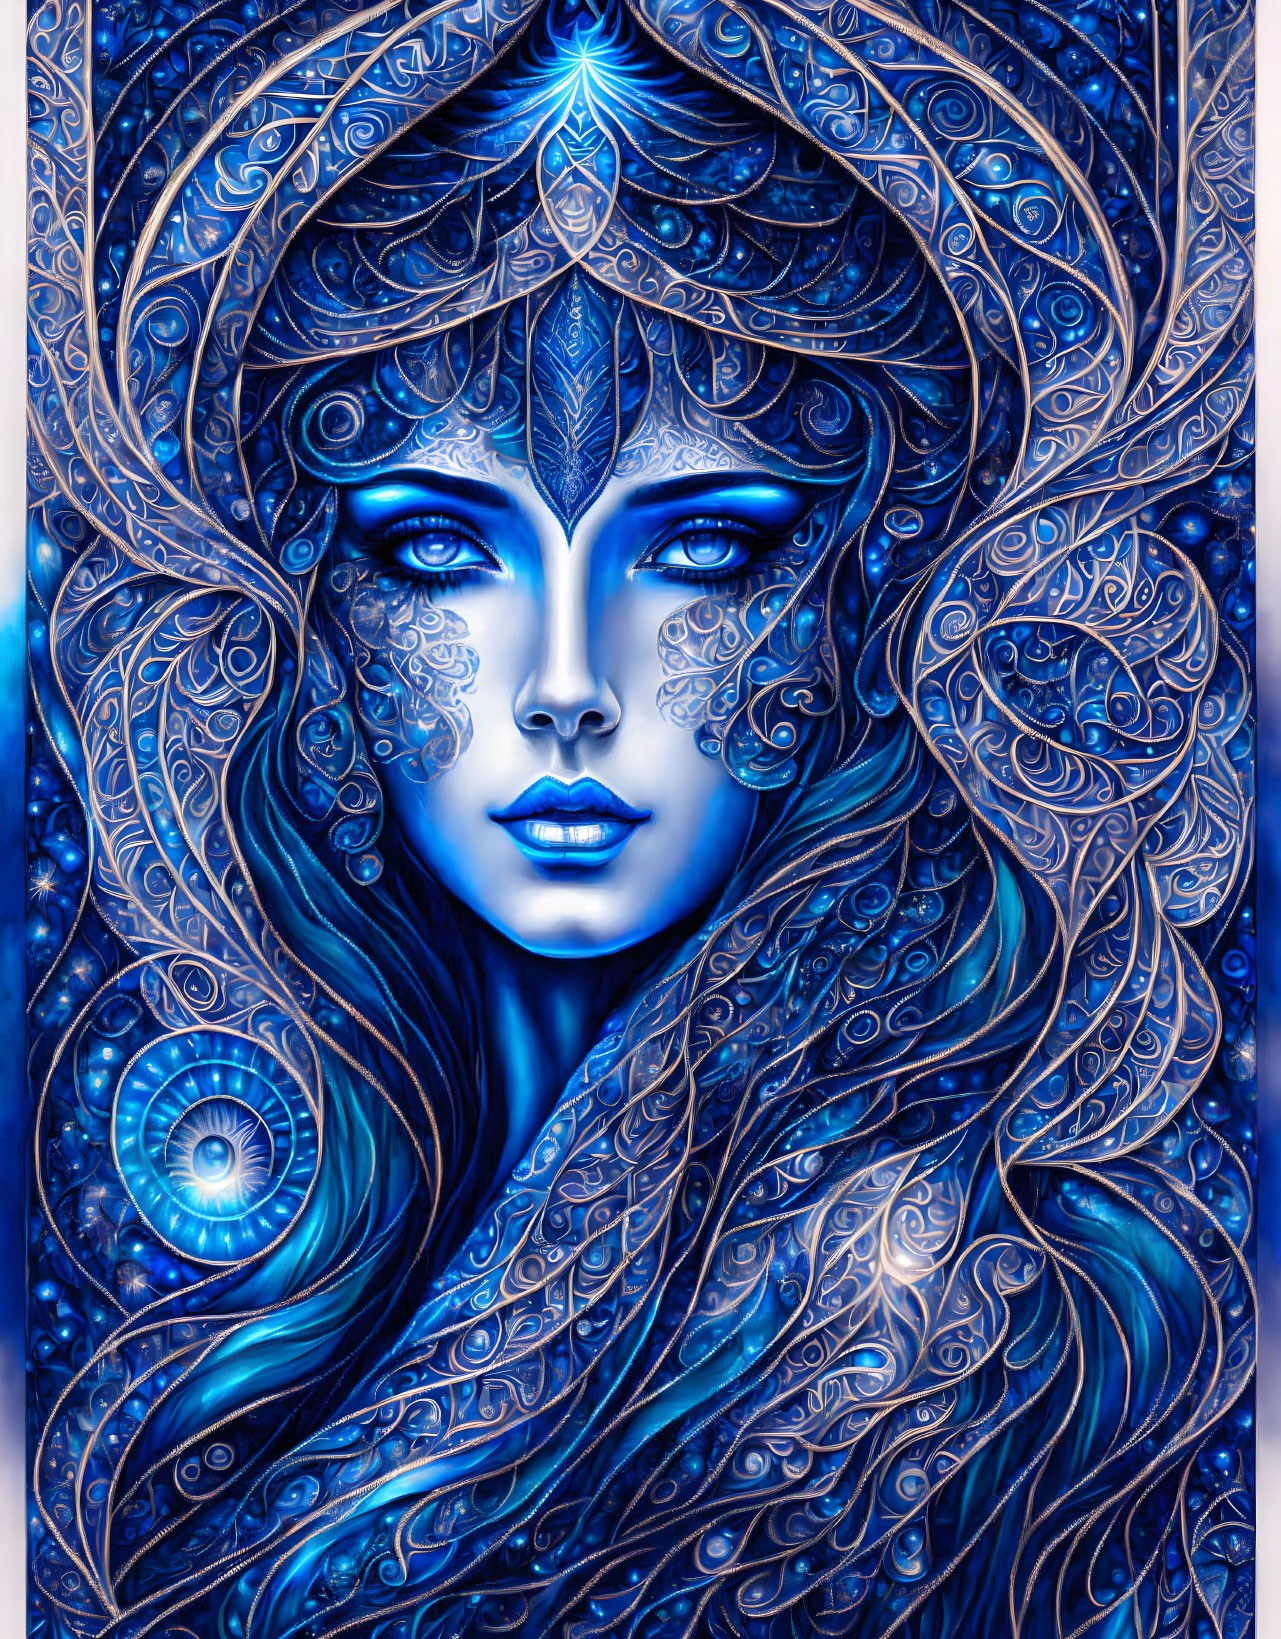 Goddess in blue